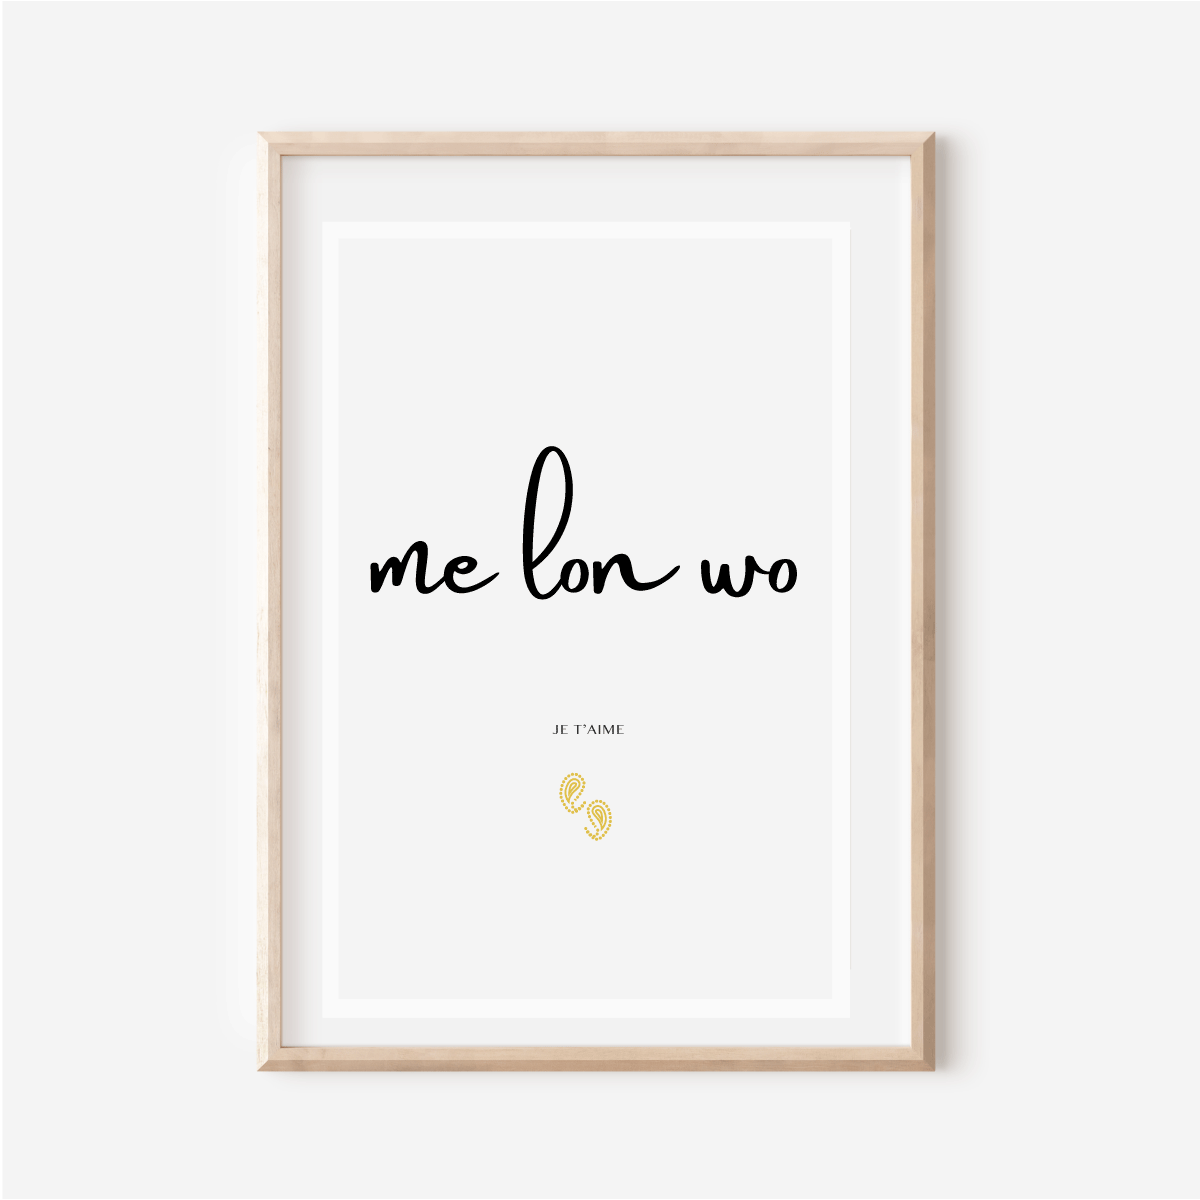 Affiche "Me lon wo" - Je t aime en Ewe - Affiche 30x40 cm